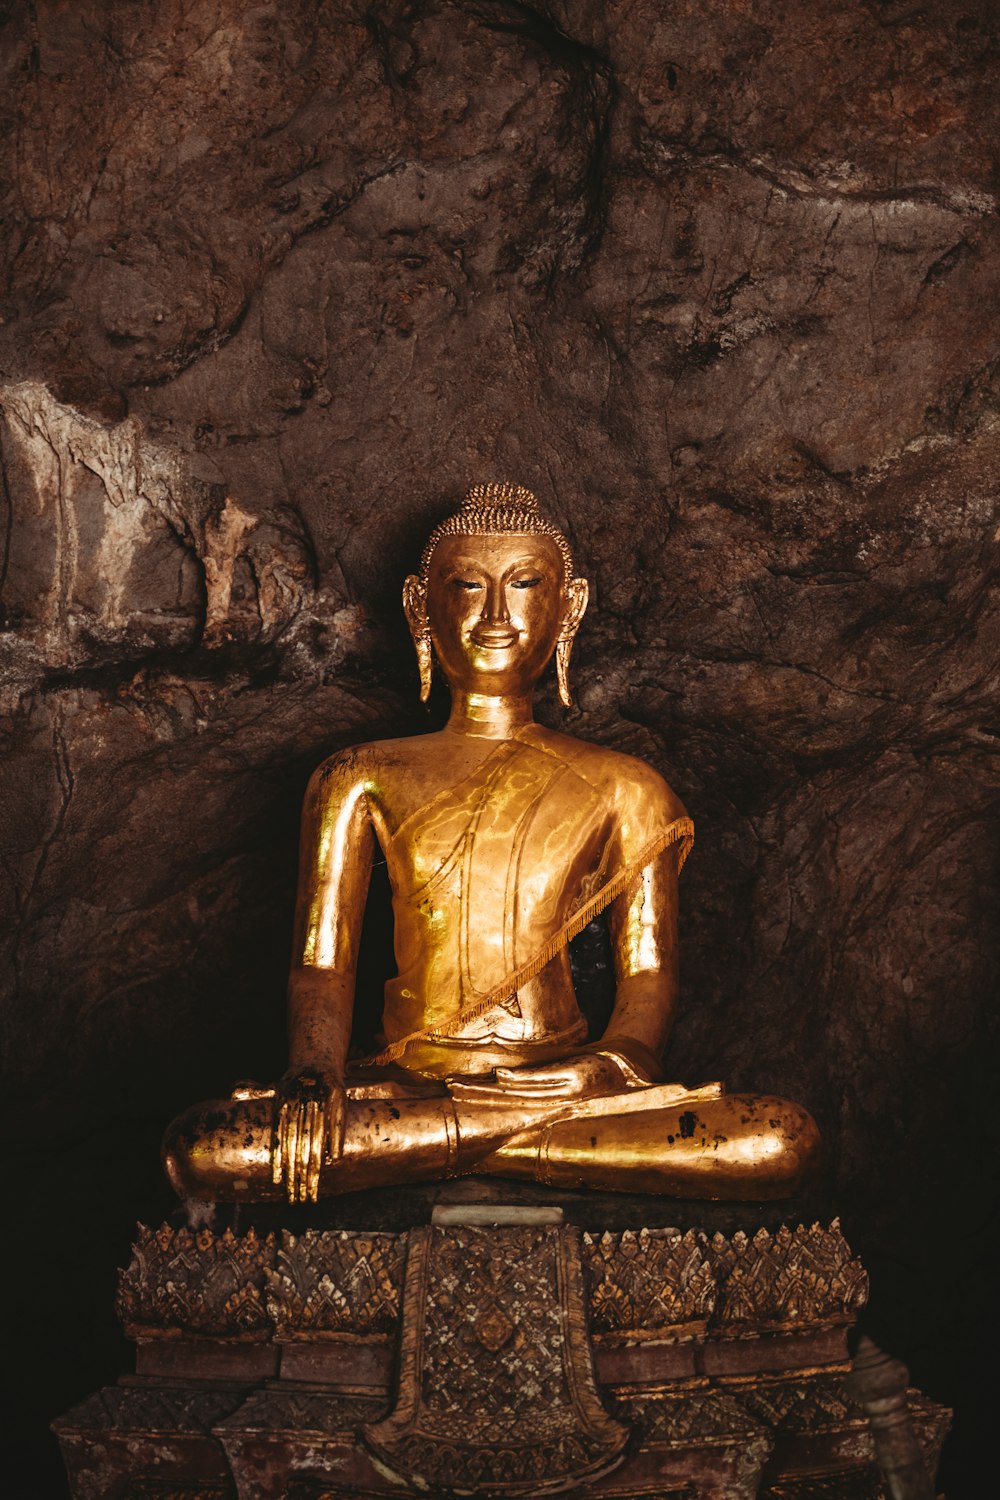 Une statue de Bouddha dorée assise dans une grotte